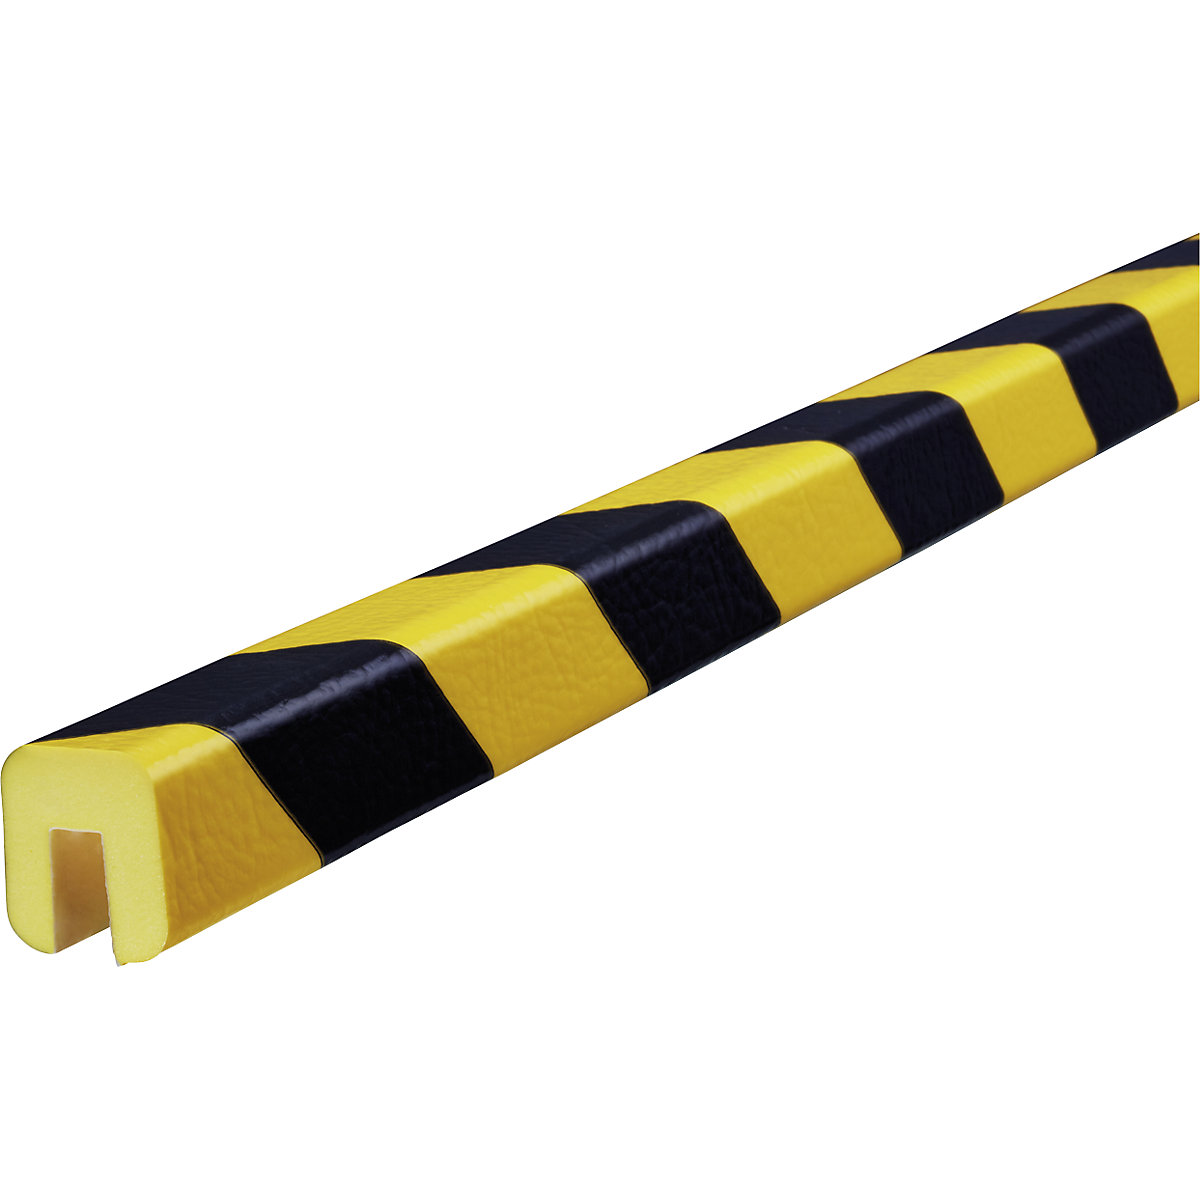 Knuffi®-randbescherming – SHG, type G, 1 rol à 5 m, zwart/geel-19